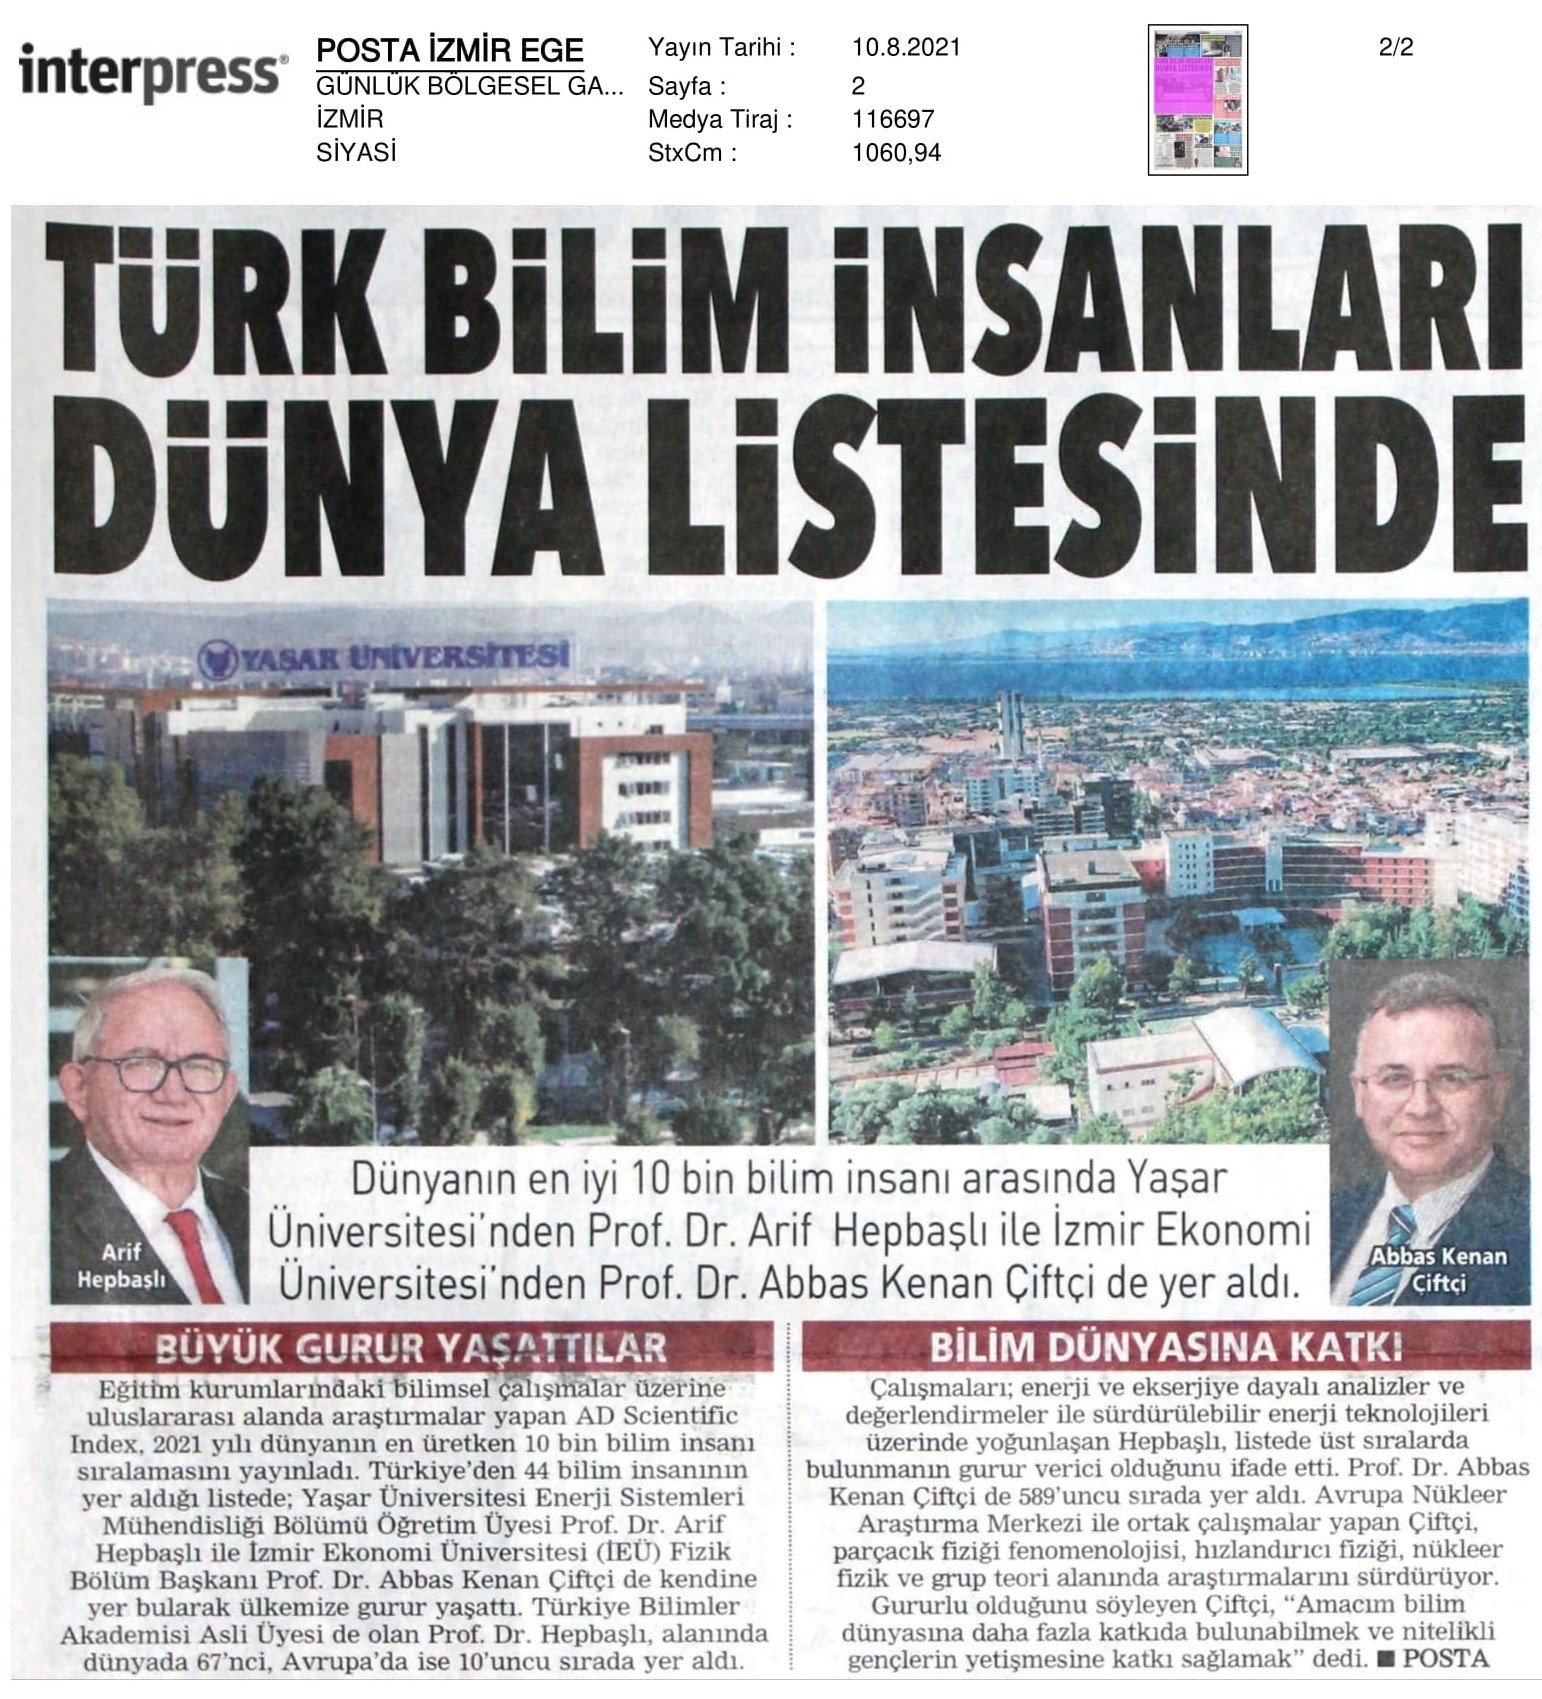 İzmir Ekonomili profesör ‘dünya listesi’nde